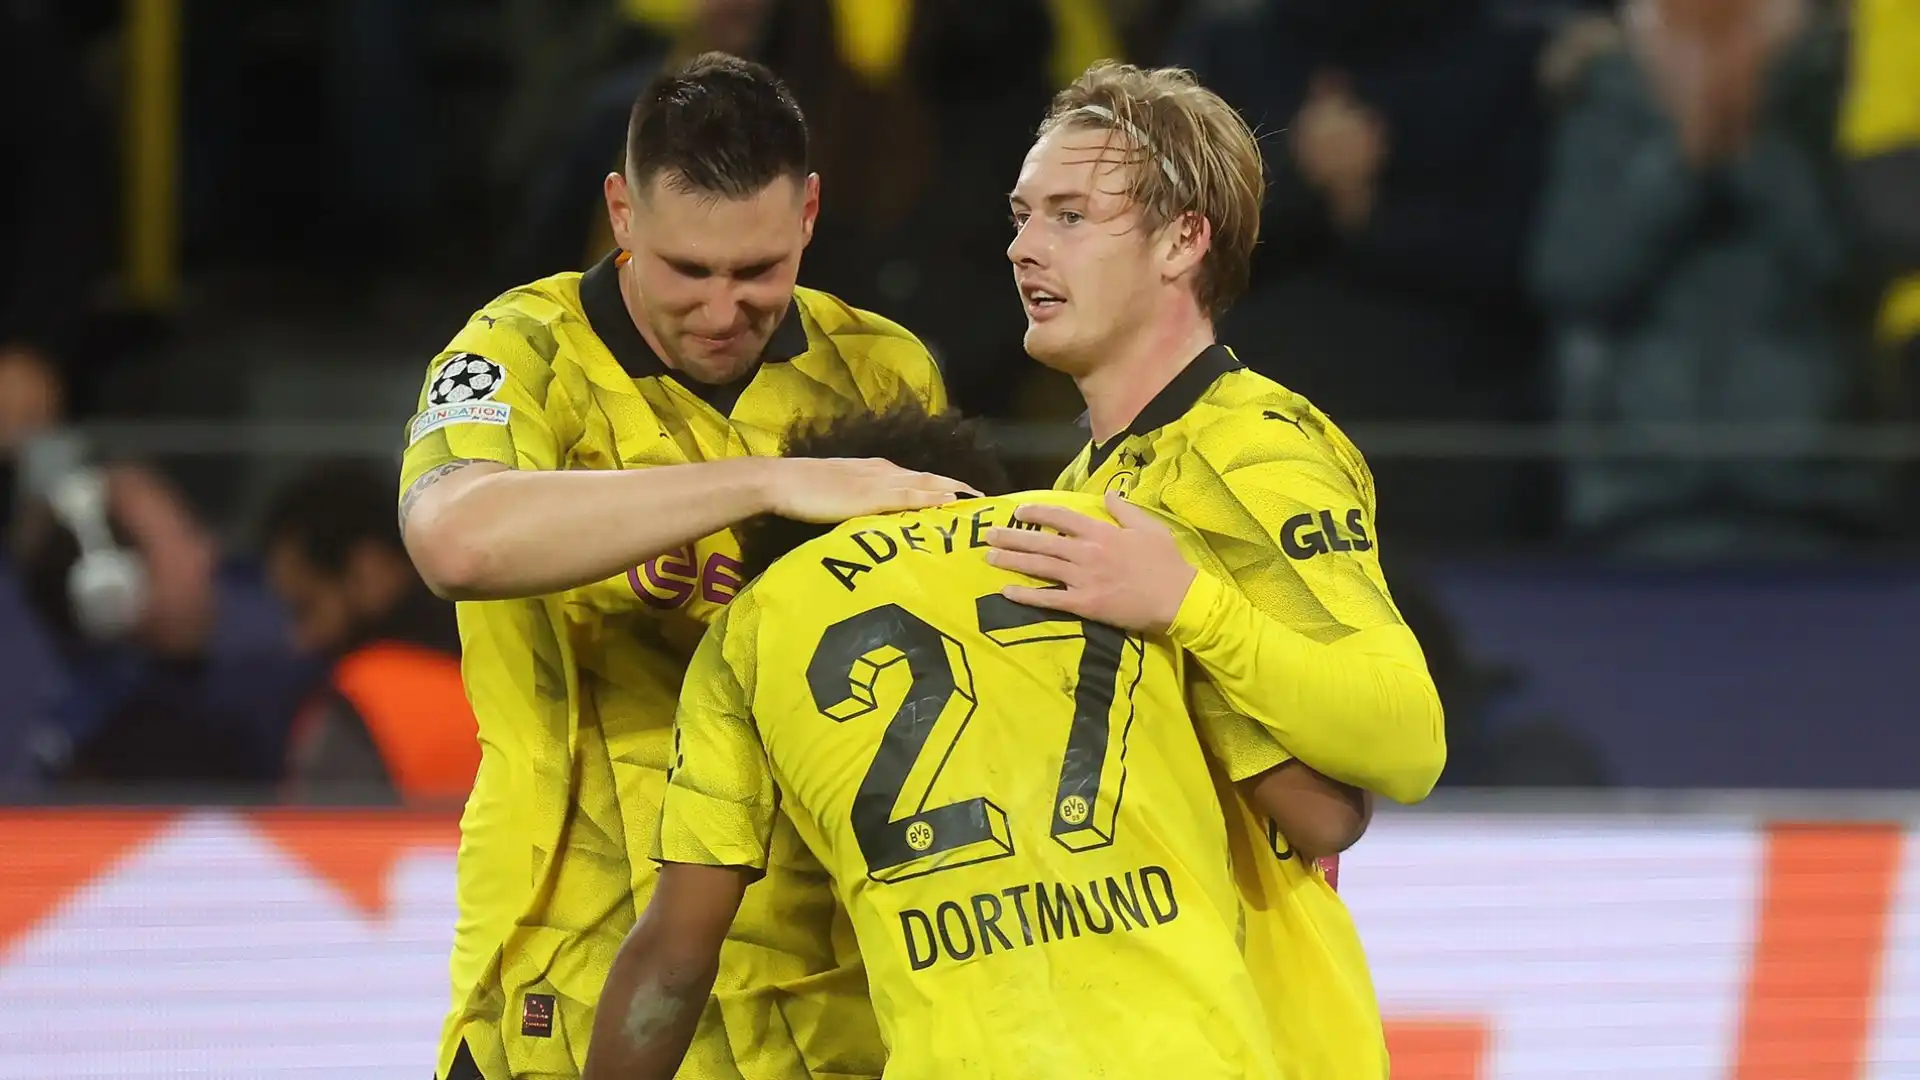 Difficilmente il Borussia Dortmund farà a meno di Brandt a gennaio, a meno di un'offerta molto importante